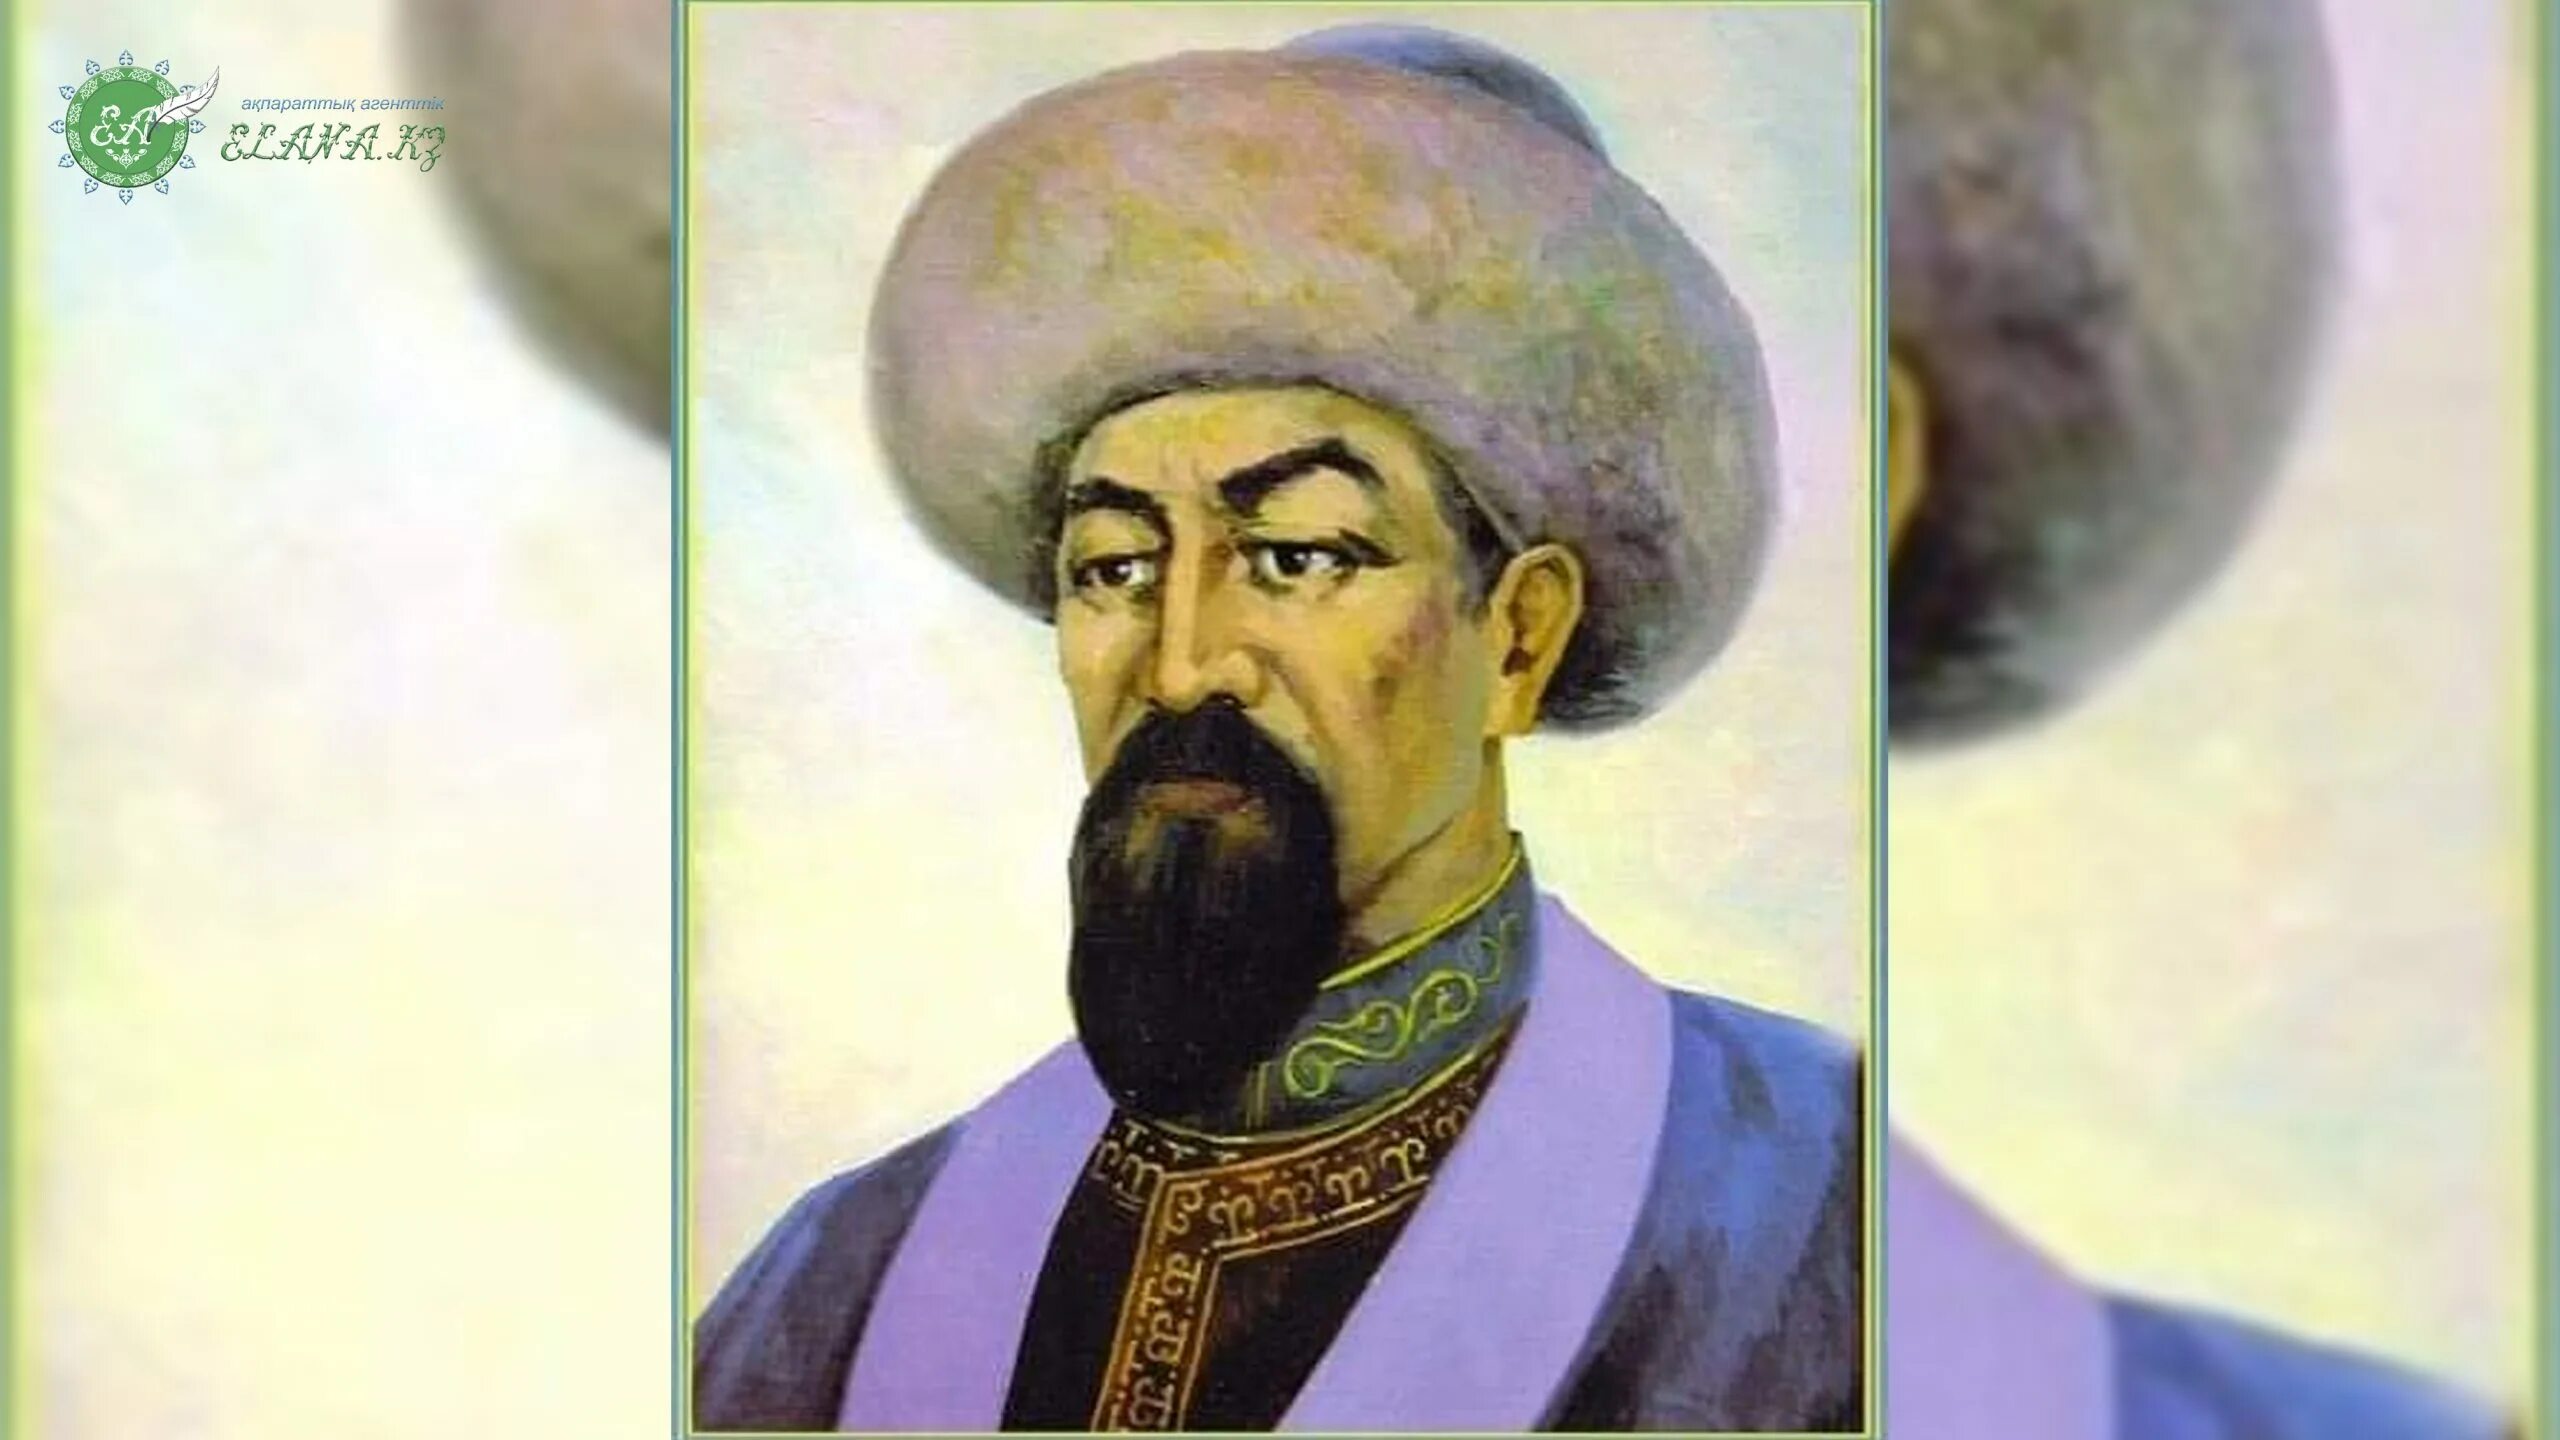 Едыге Хан. Портрет Кенгирбай би Ата. Ногайская Орда правитель Едиге. Ескелді би. Тг ханы